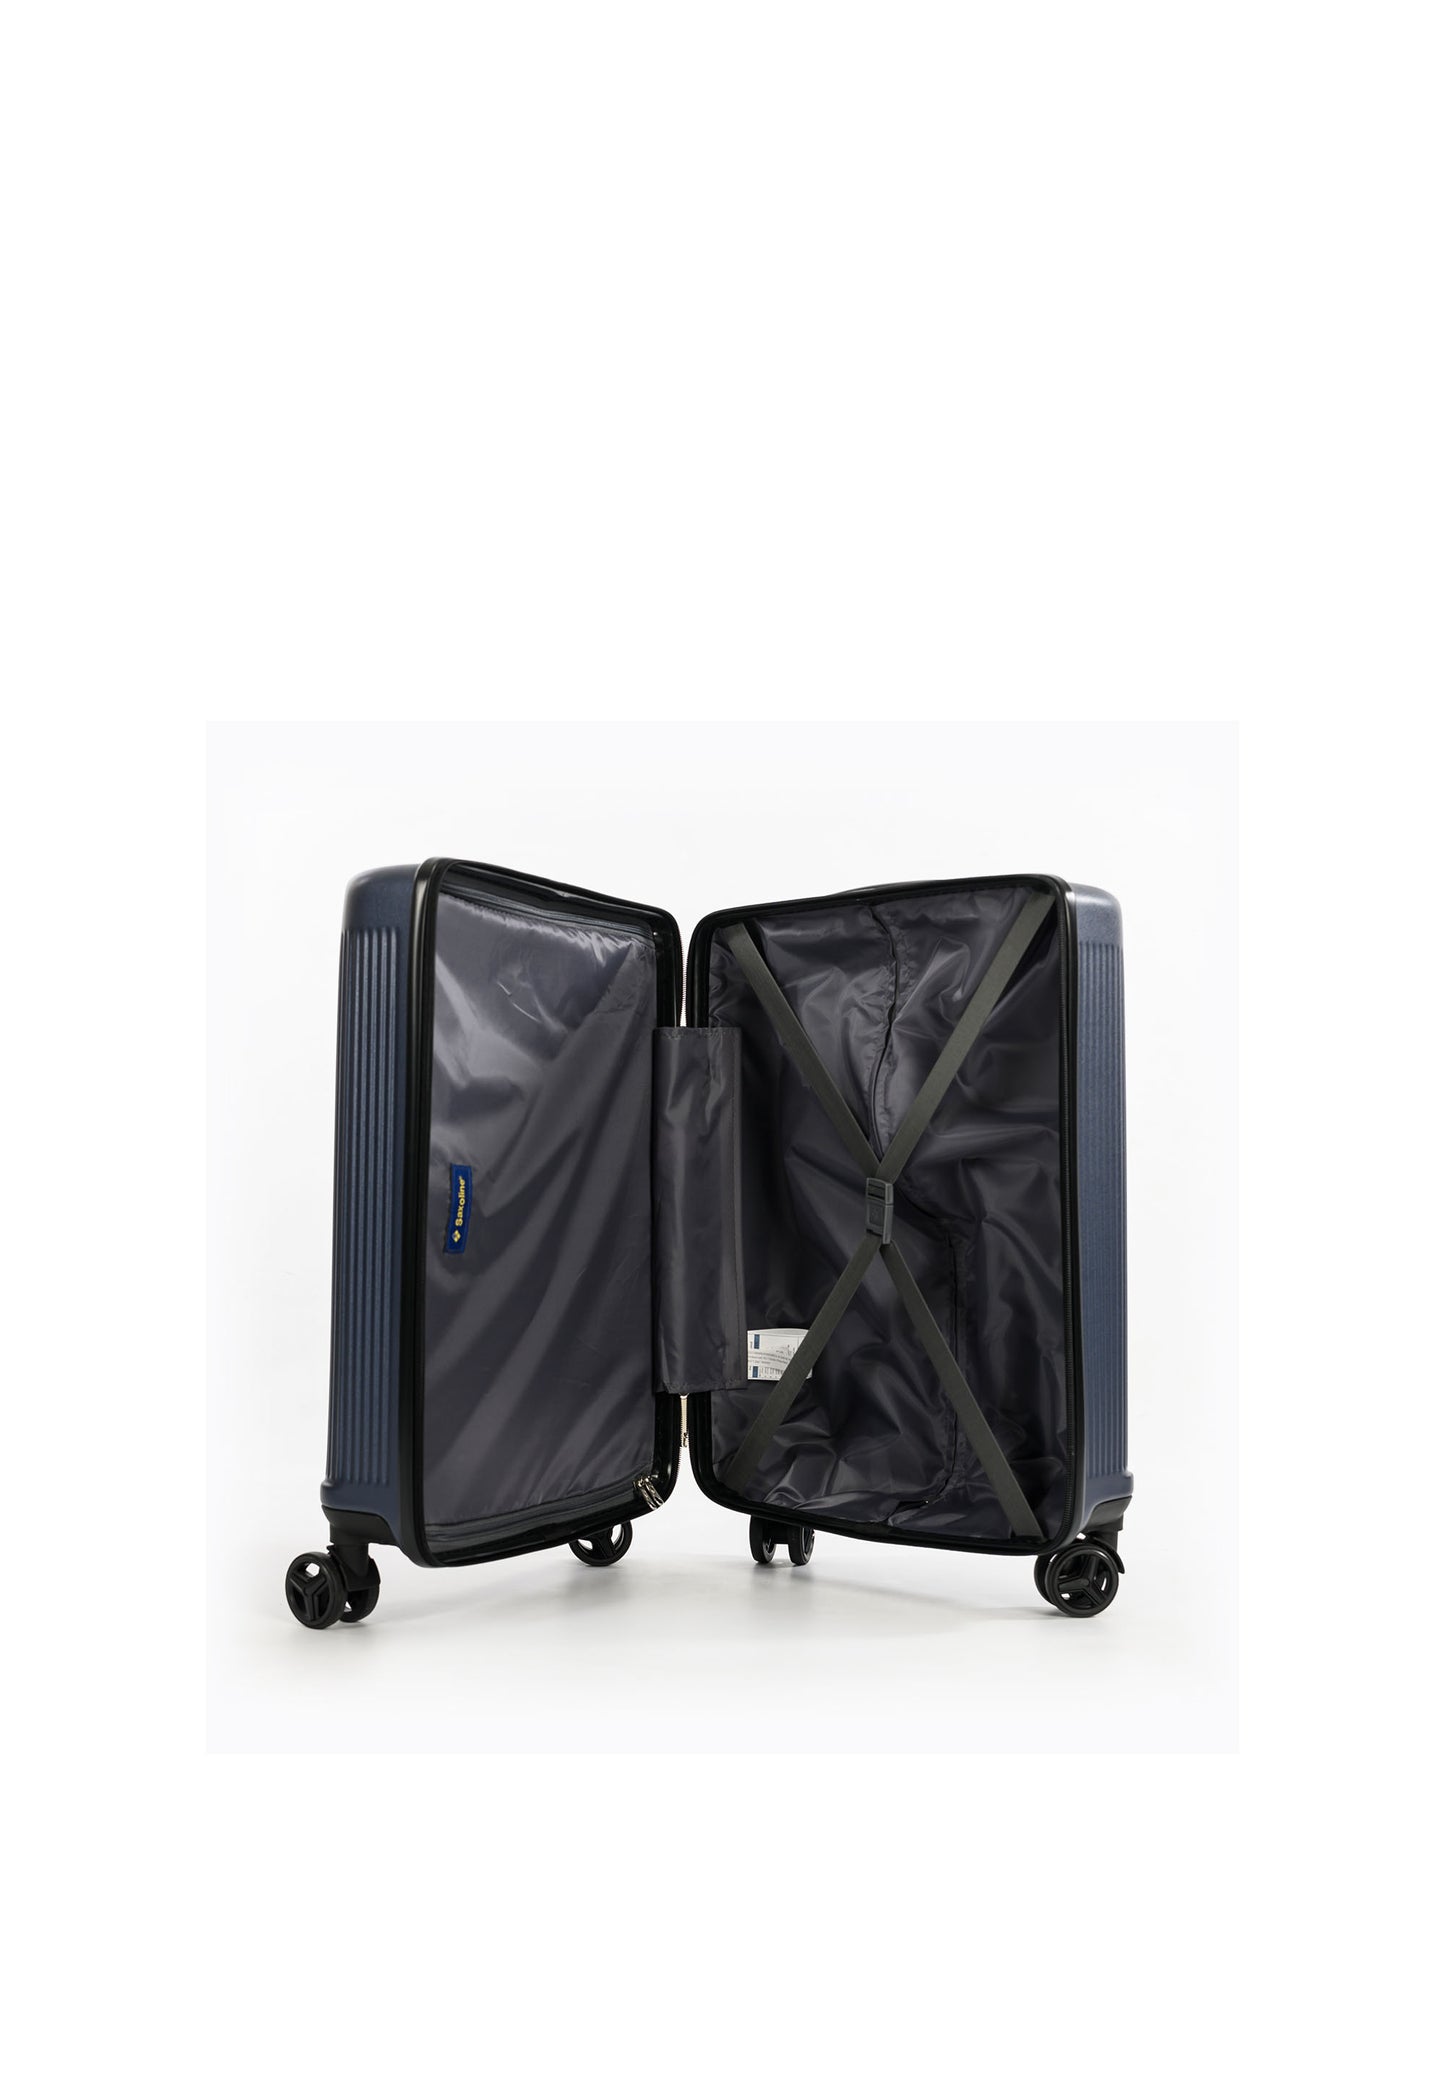 Saxoline Handbagage  Algarve Hard Luggage / Suitcase / Trolley - 55.5x39.5x24.5 cm - - Blaue